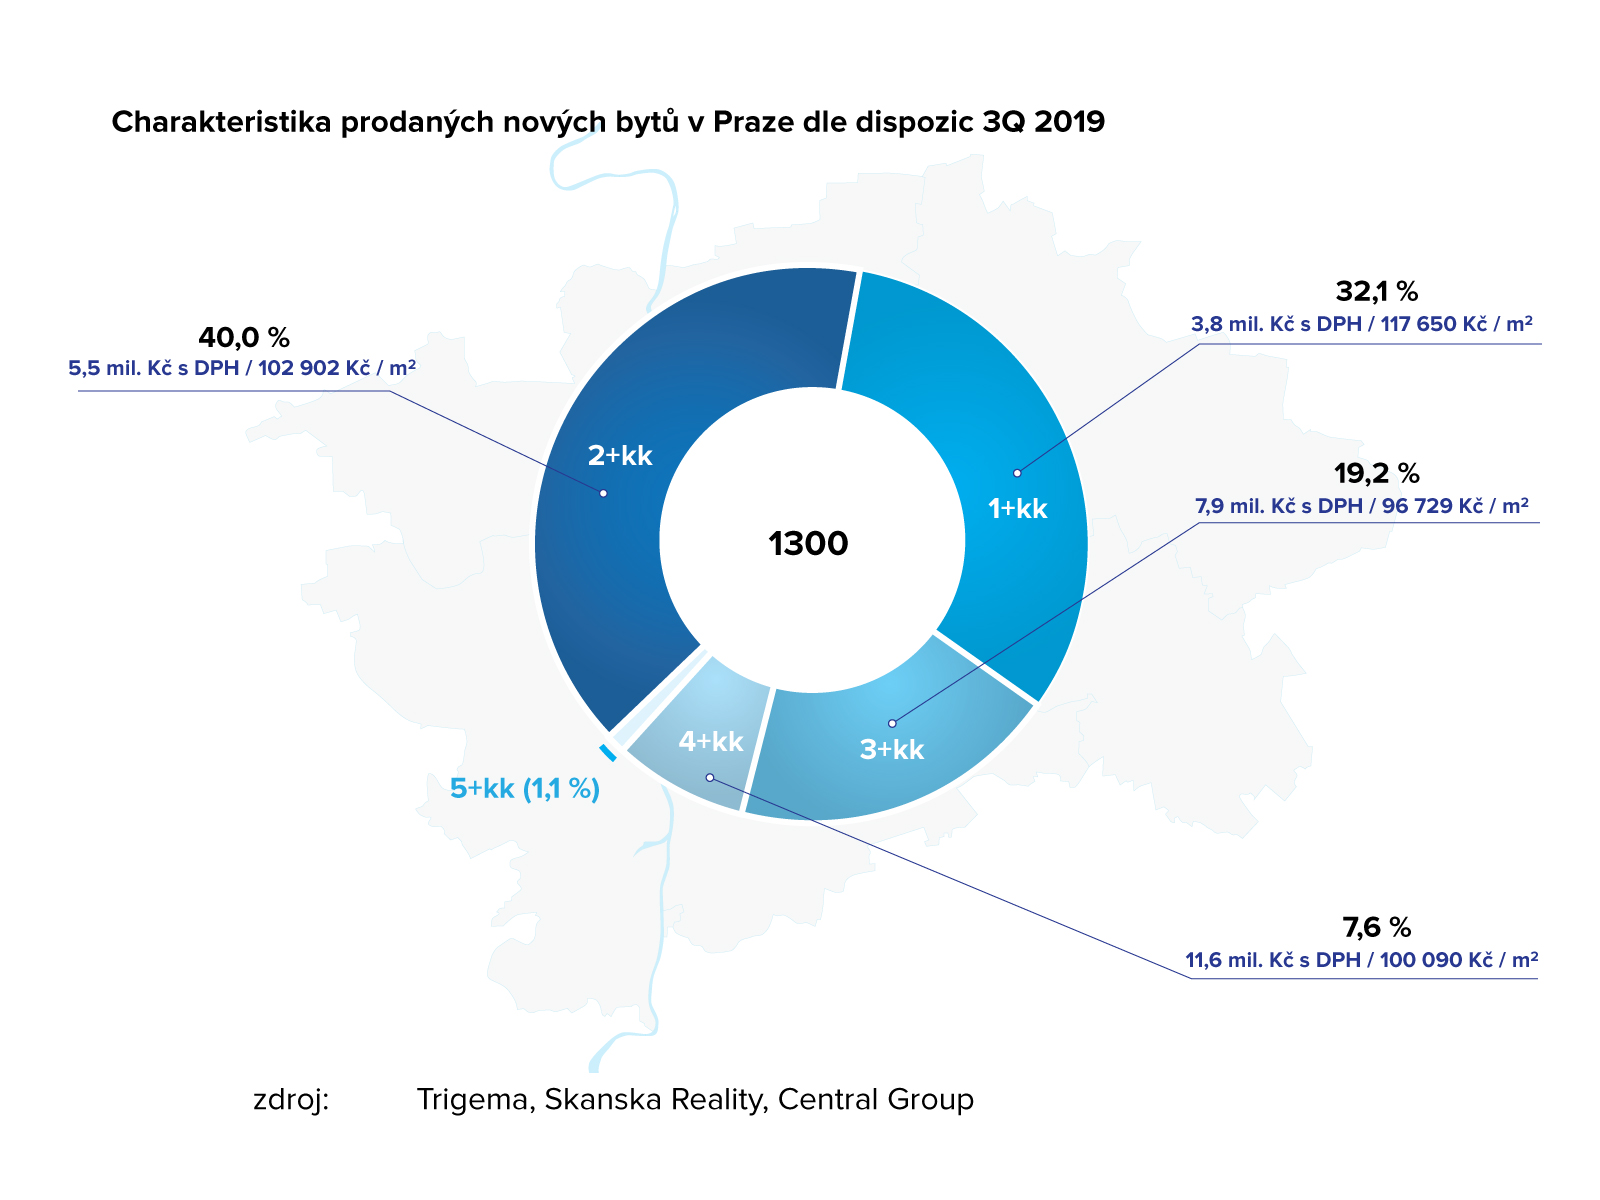 Struktura prodaných nových bytů v Praze ve 3Q 2019